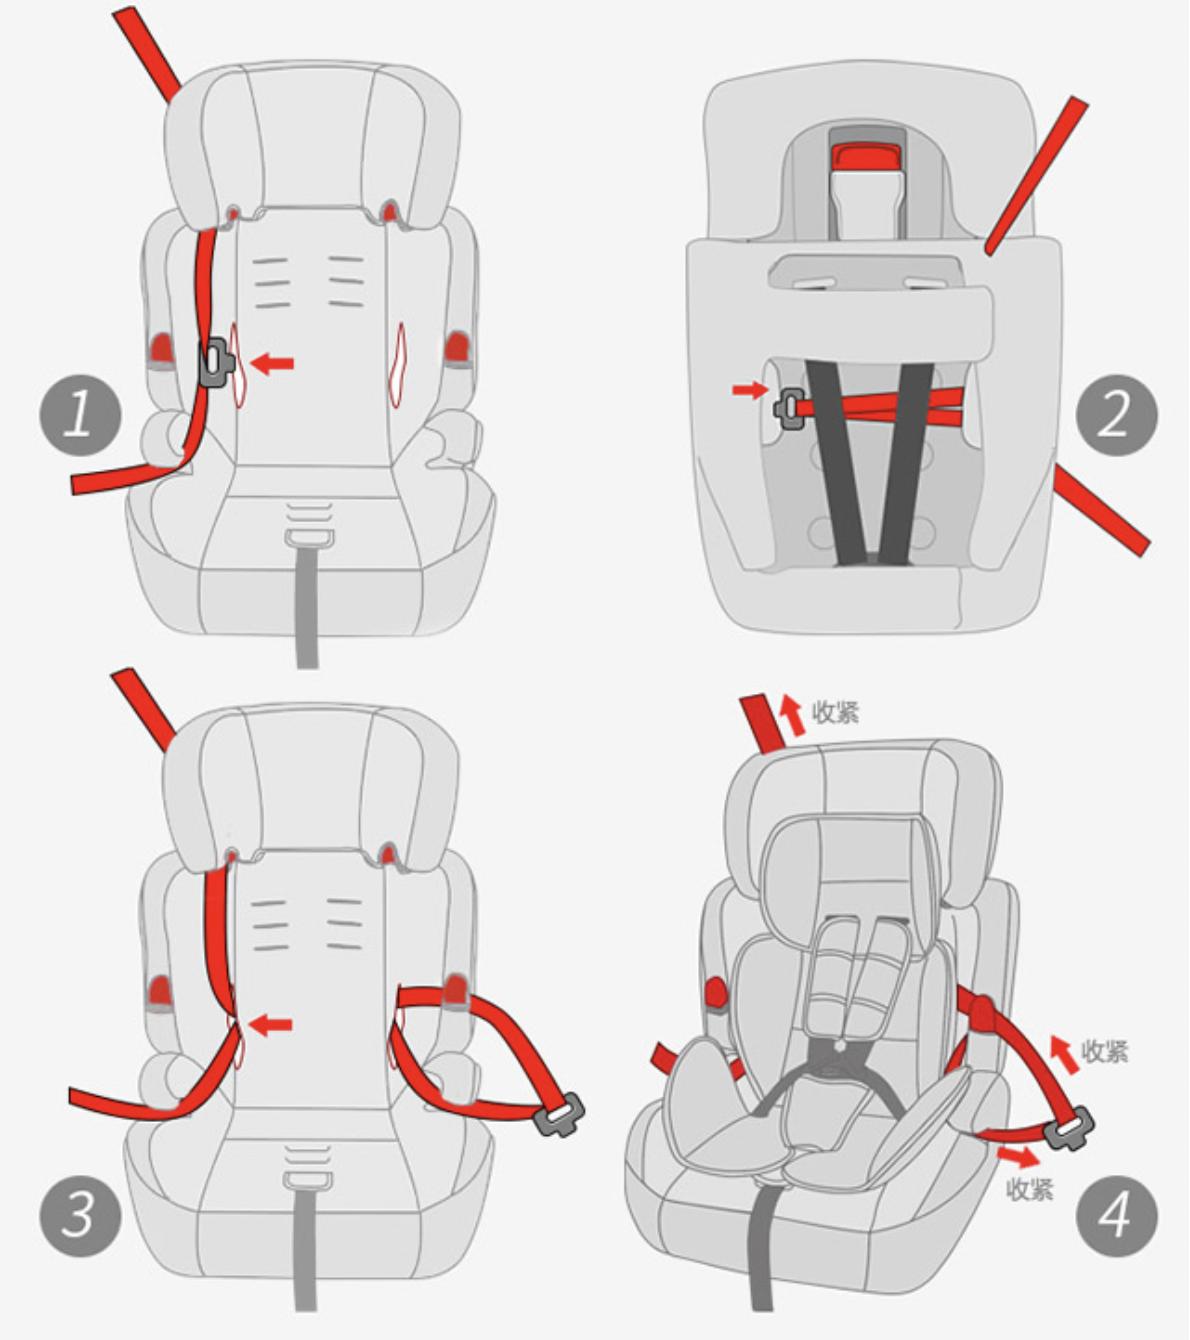 安全座椅的正确安装方法(儿童安全座椅安装图解)